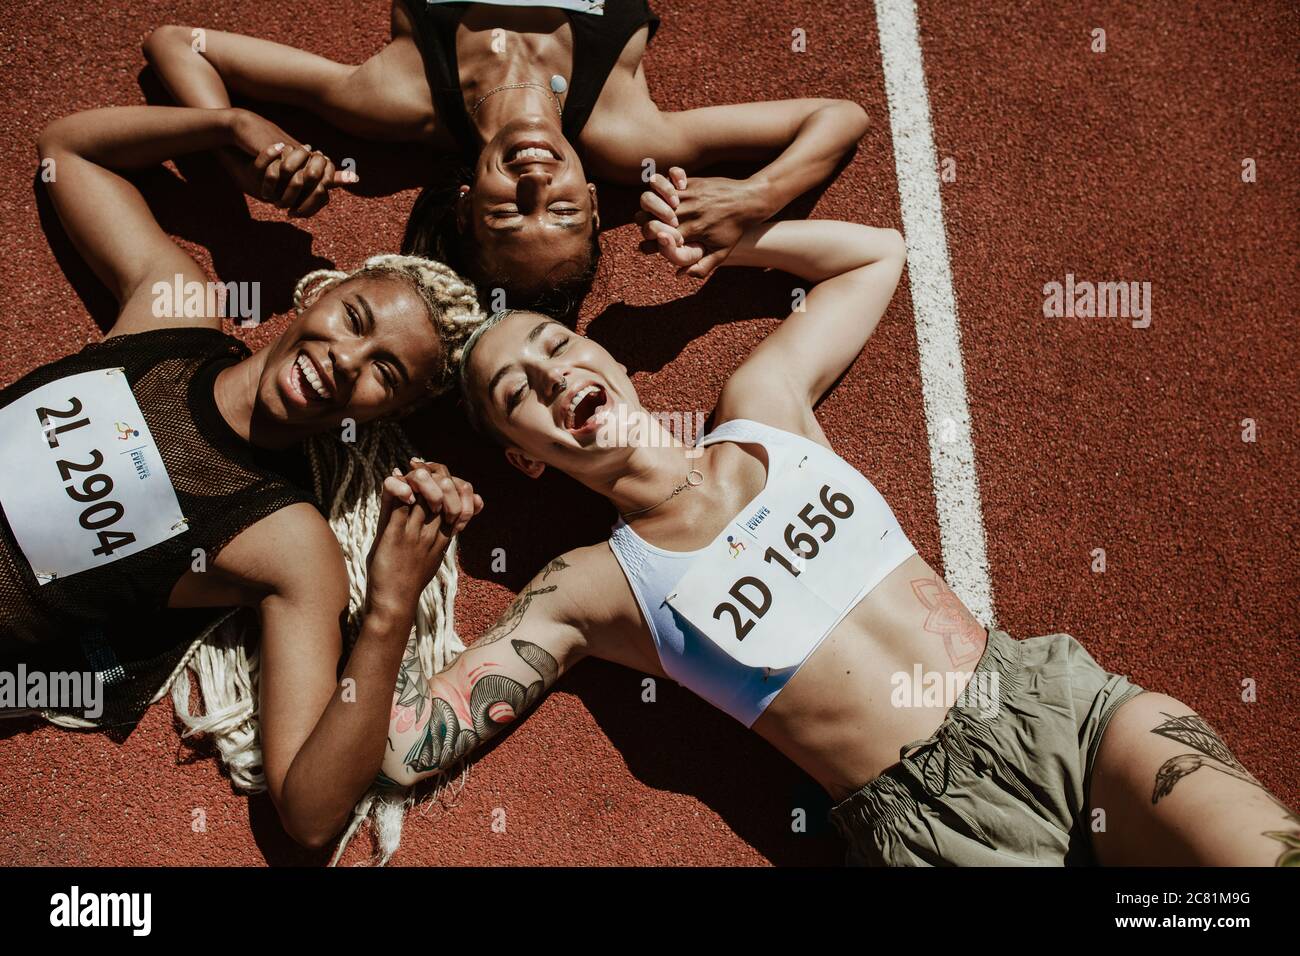 Vue de dessus de trois athlètes féminins allongés ensemble sur la piste de course en tenant les mains et en souriant tout en regardant l'appareil photo. Une équipe de coureurs qui a réussi est enjoyi Banque D'Images